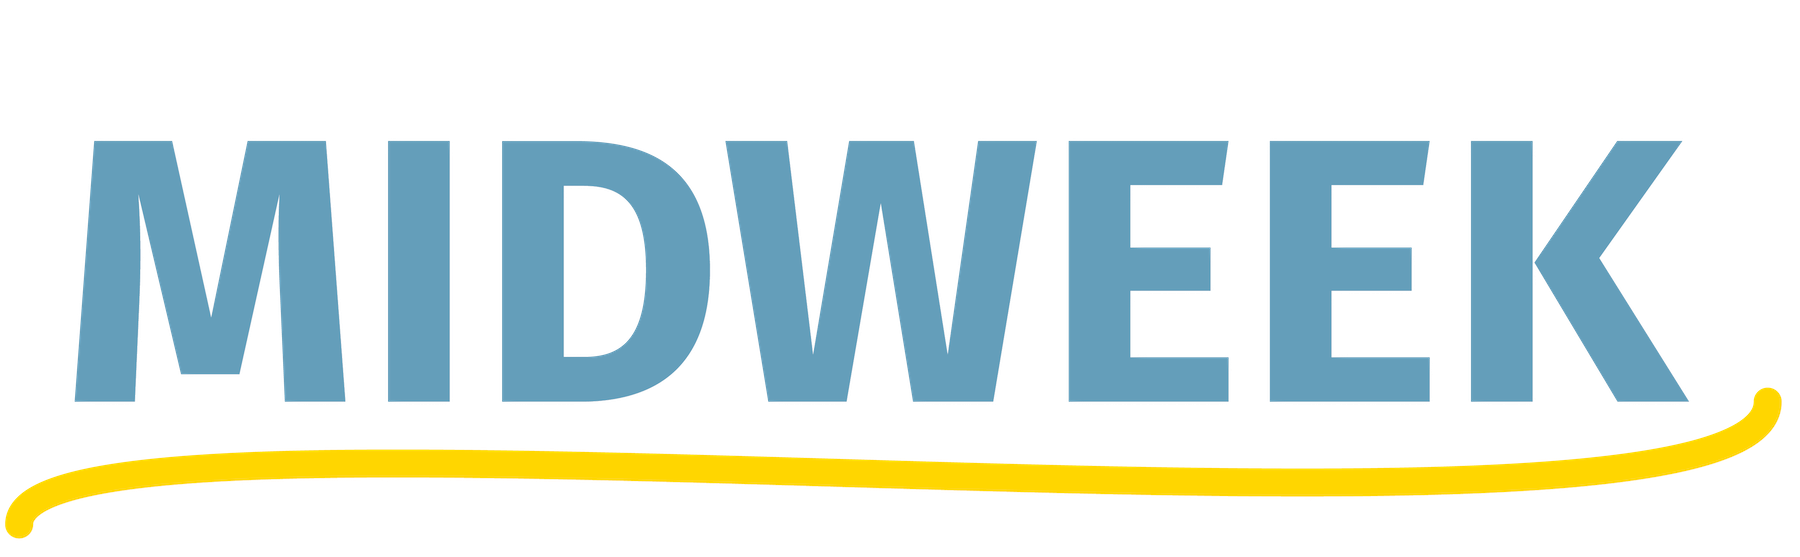 Midweek_logo